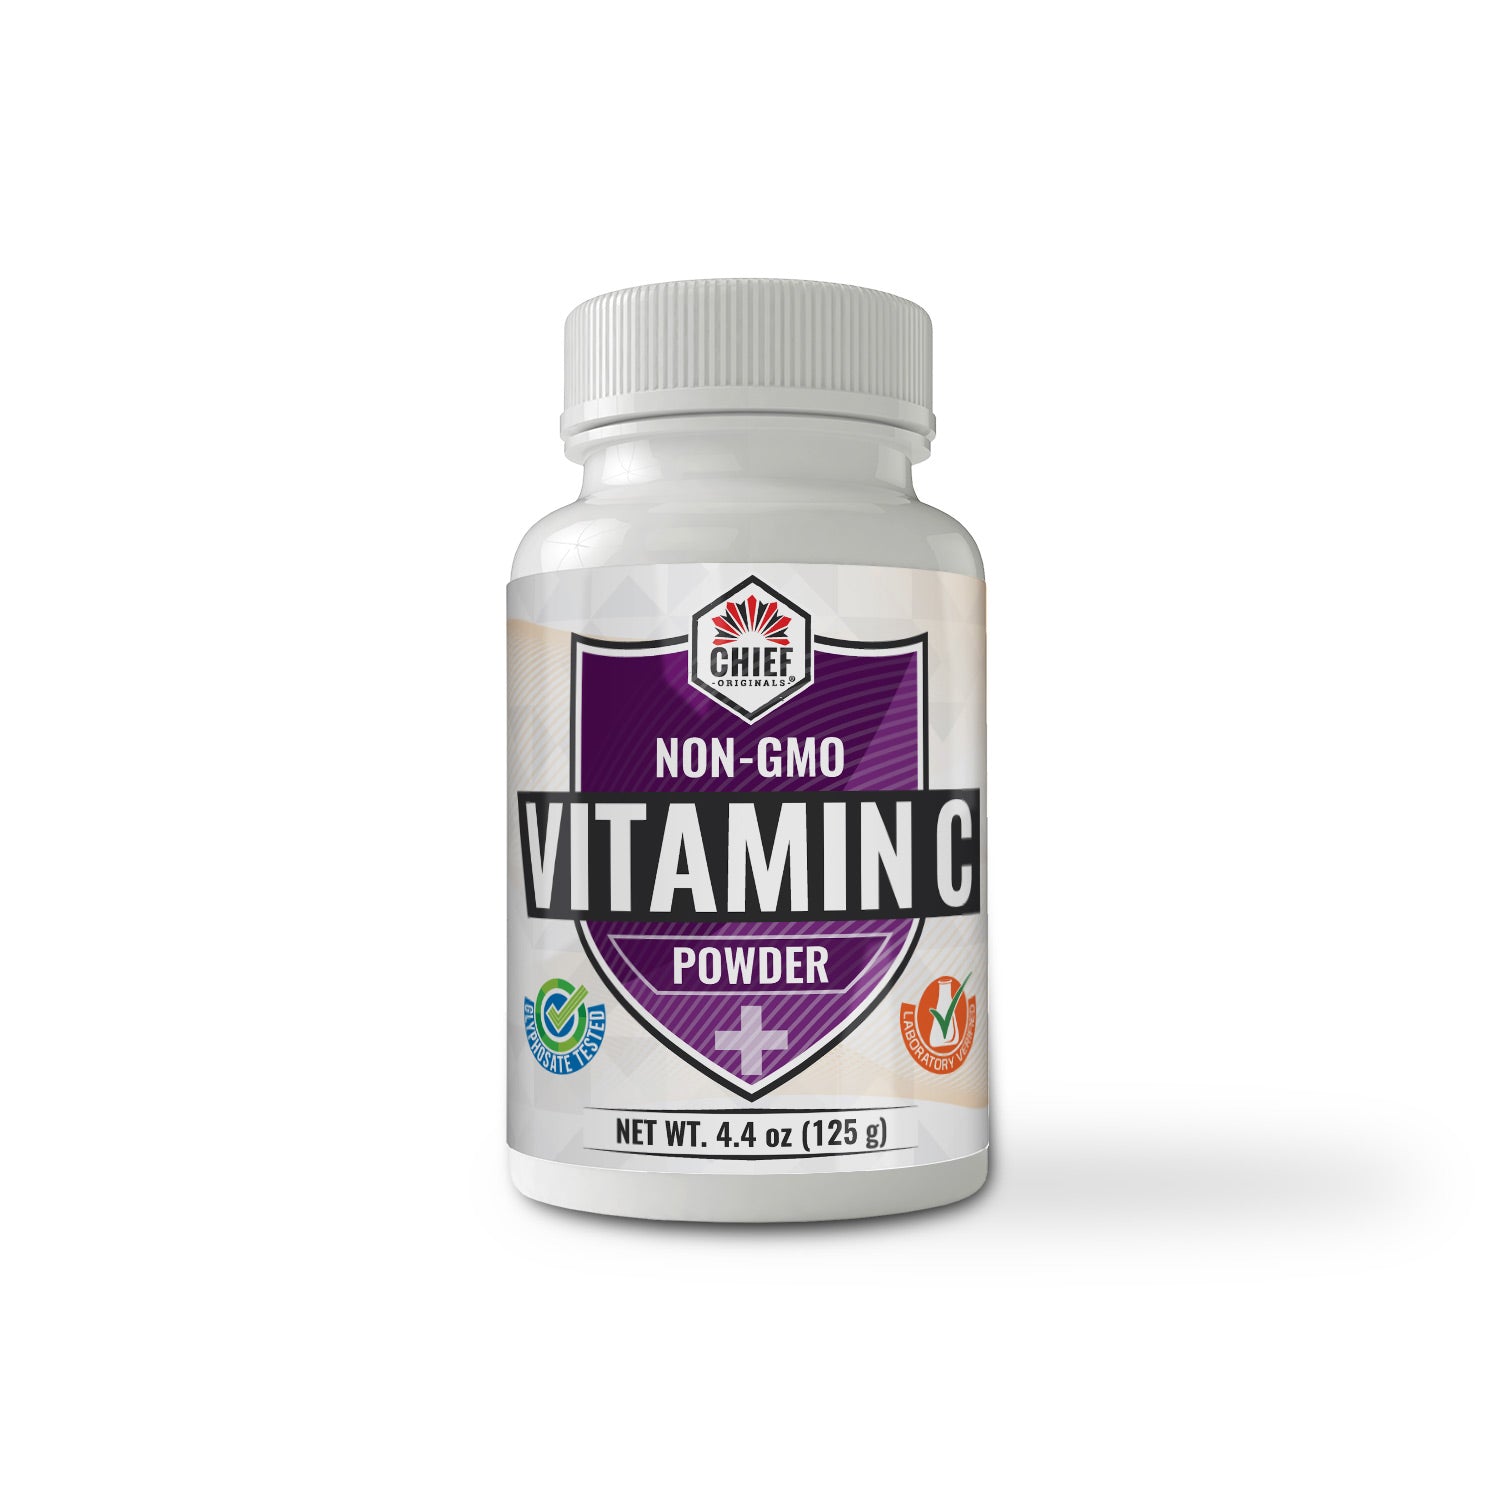 Non-GMO Vitamin C Powder 4.4oz (125g)